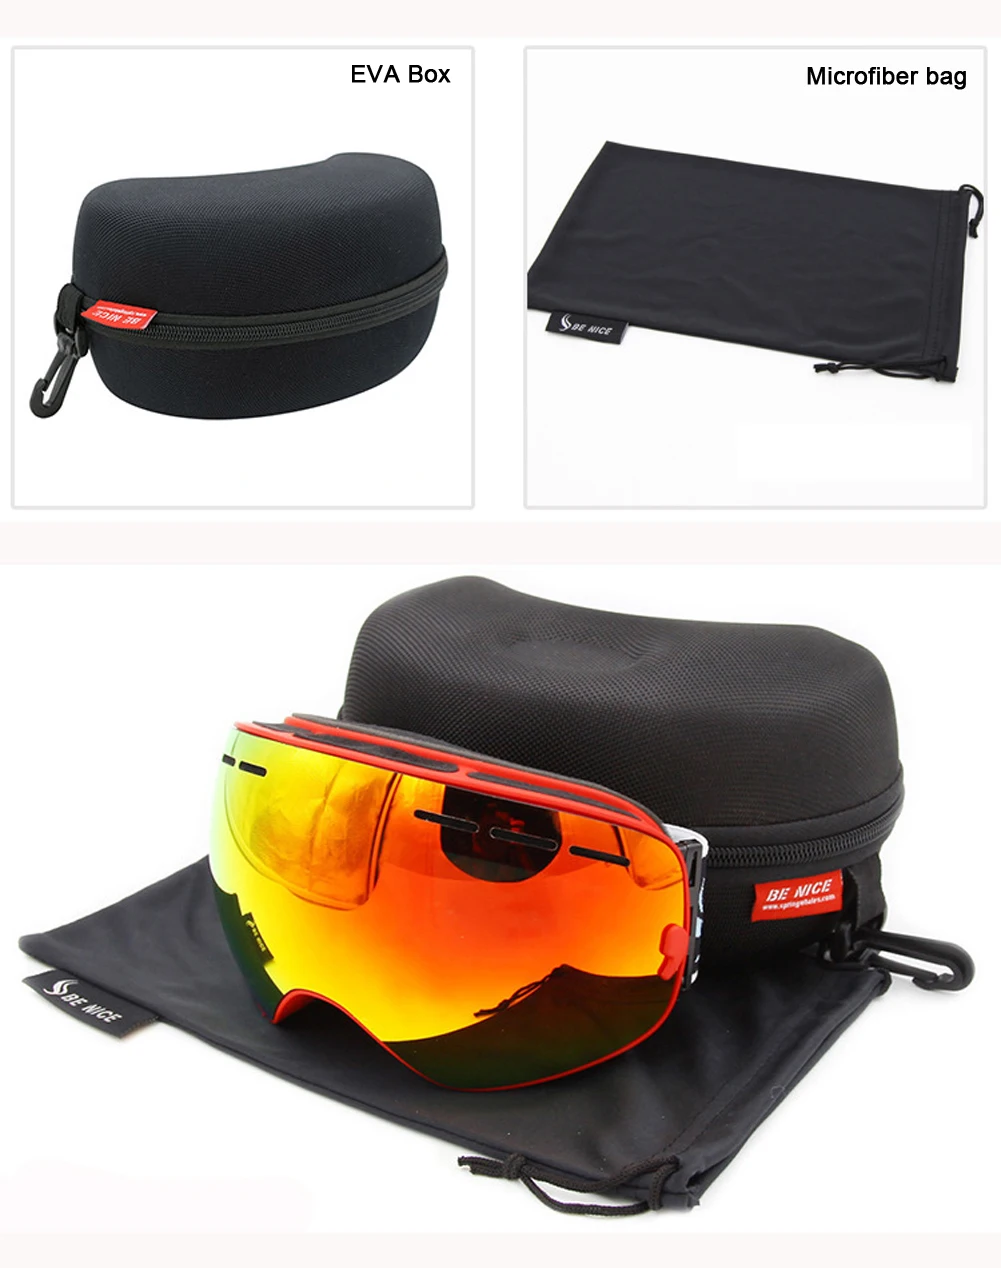 В коробке HD Лыжные очки двойные противотуманные снежные очки для сноуборда UV400 большие сферические лыжные очки совместимые очки для близорукости для взрослых